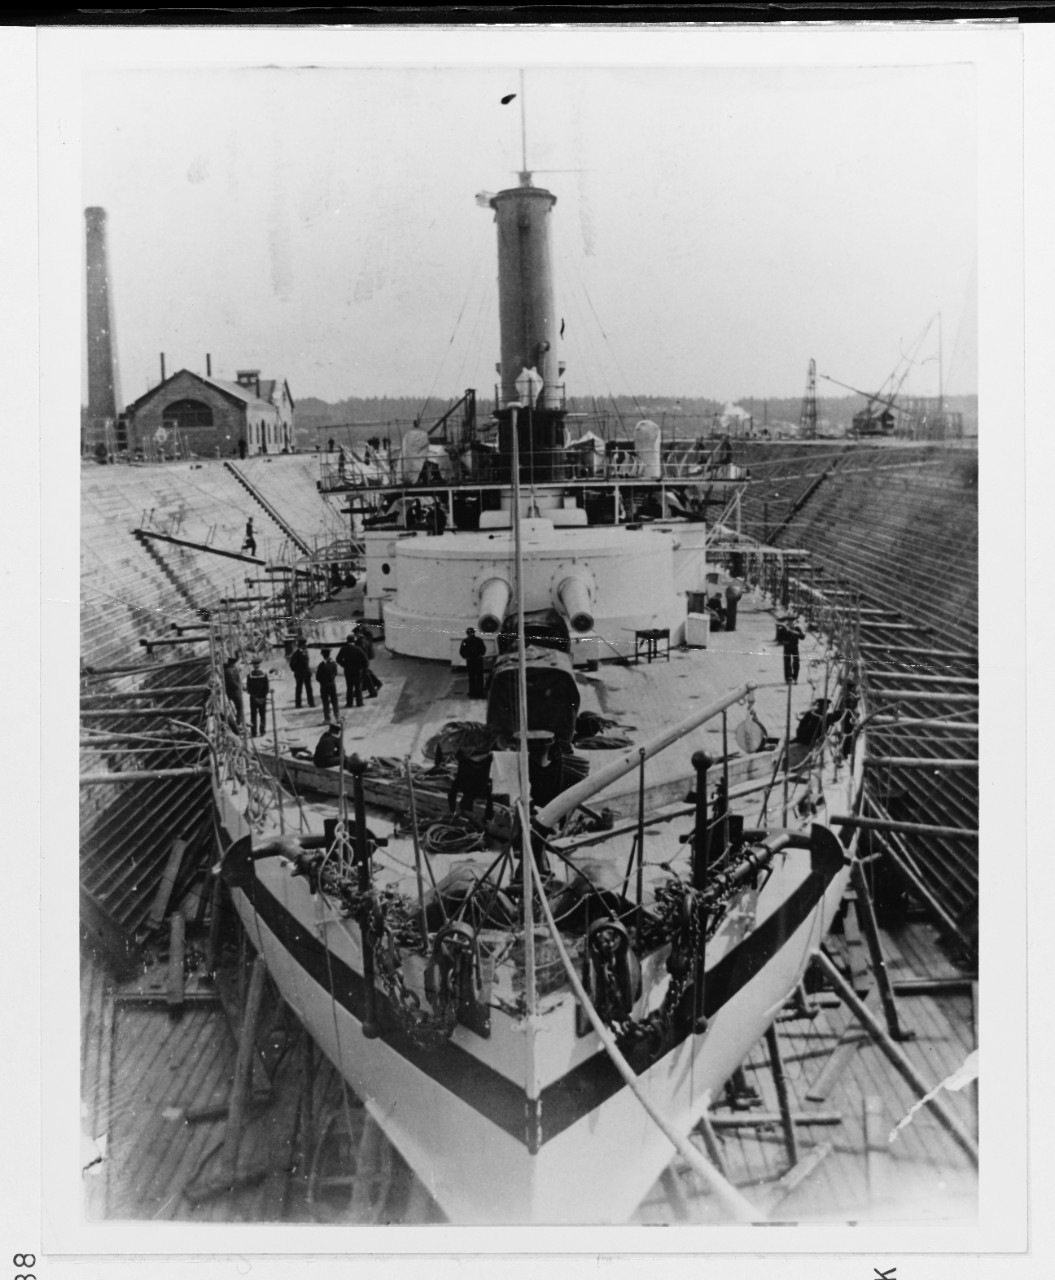 USS MONTEREY (BM-6)